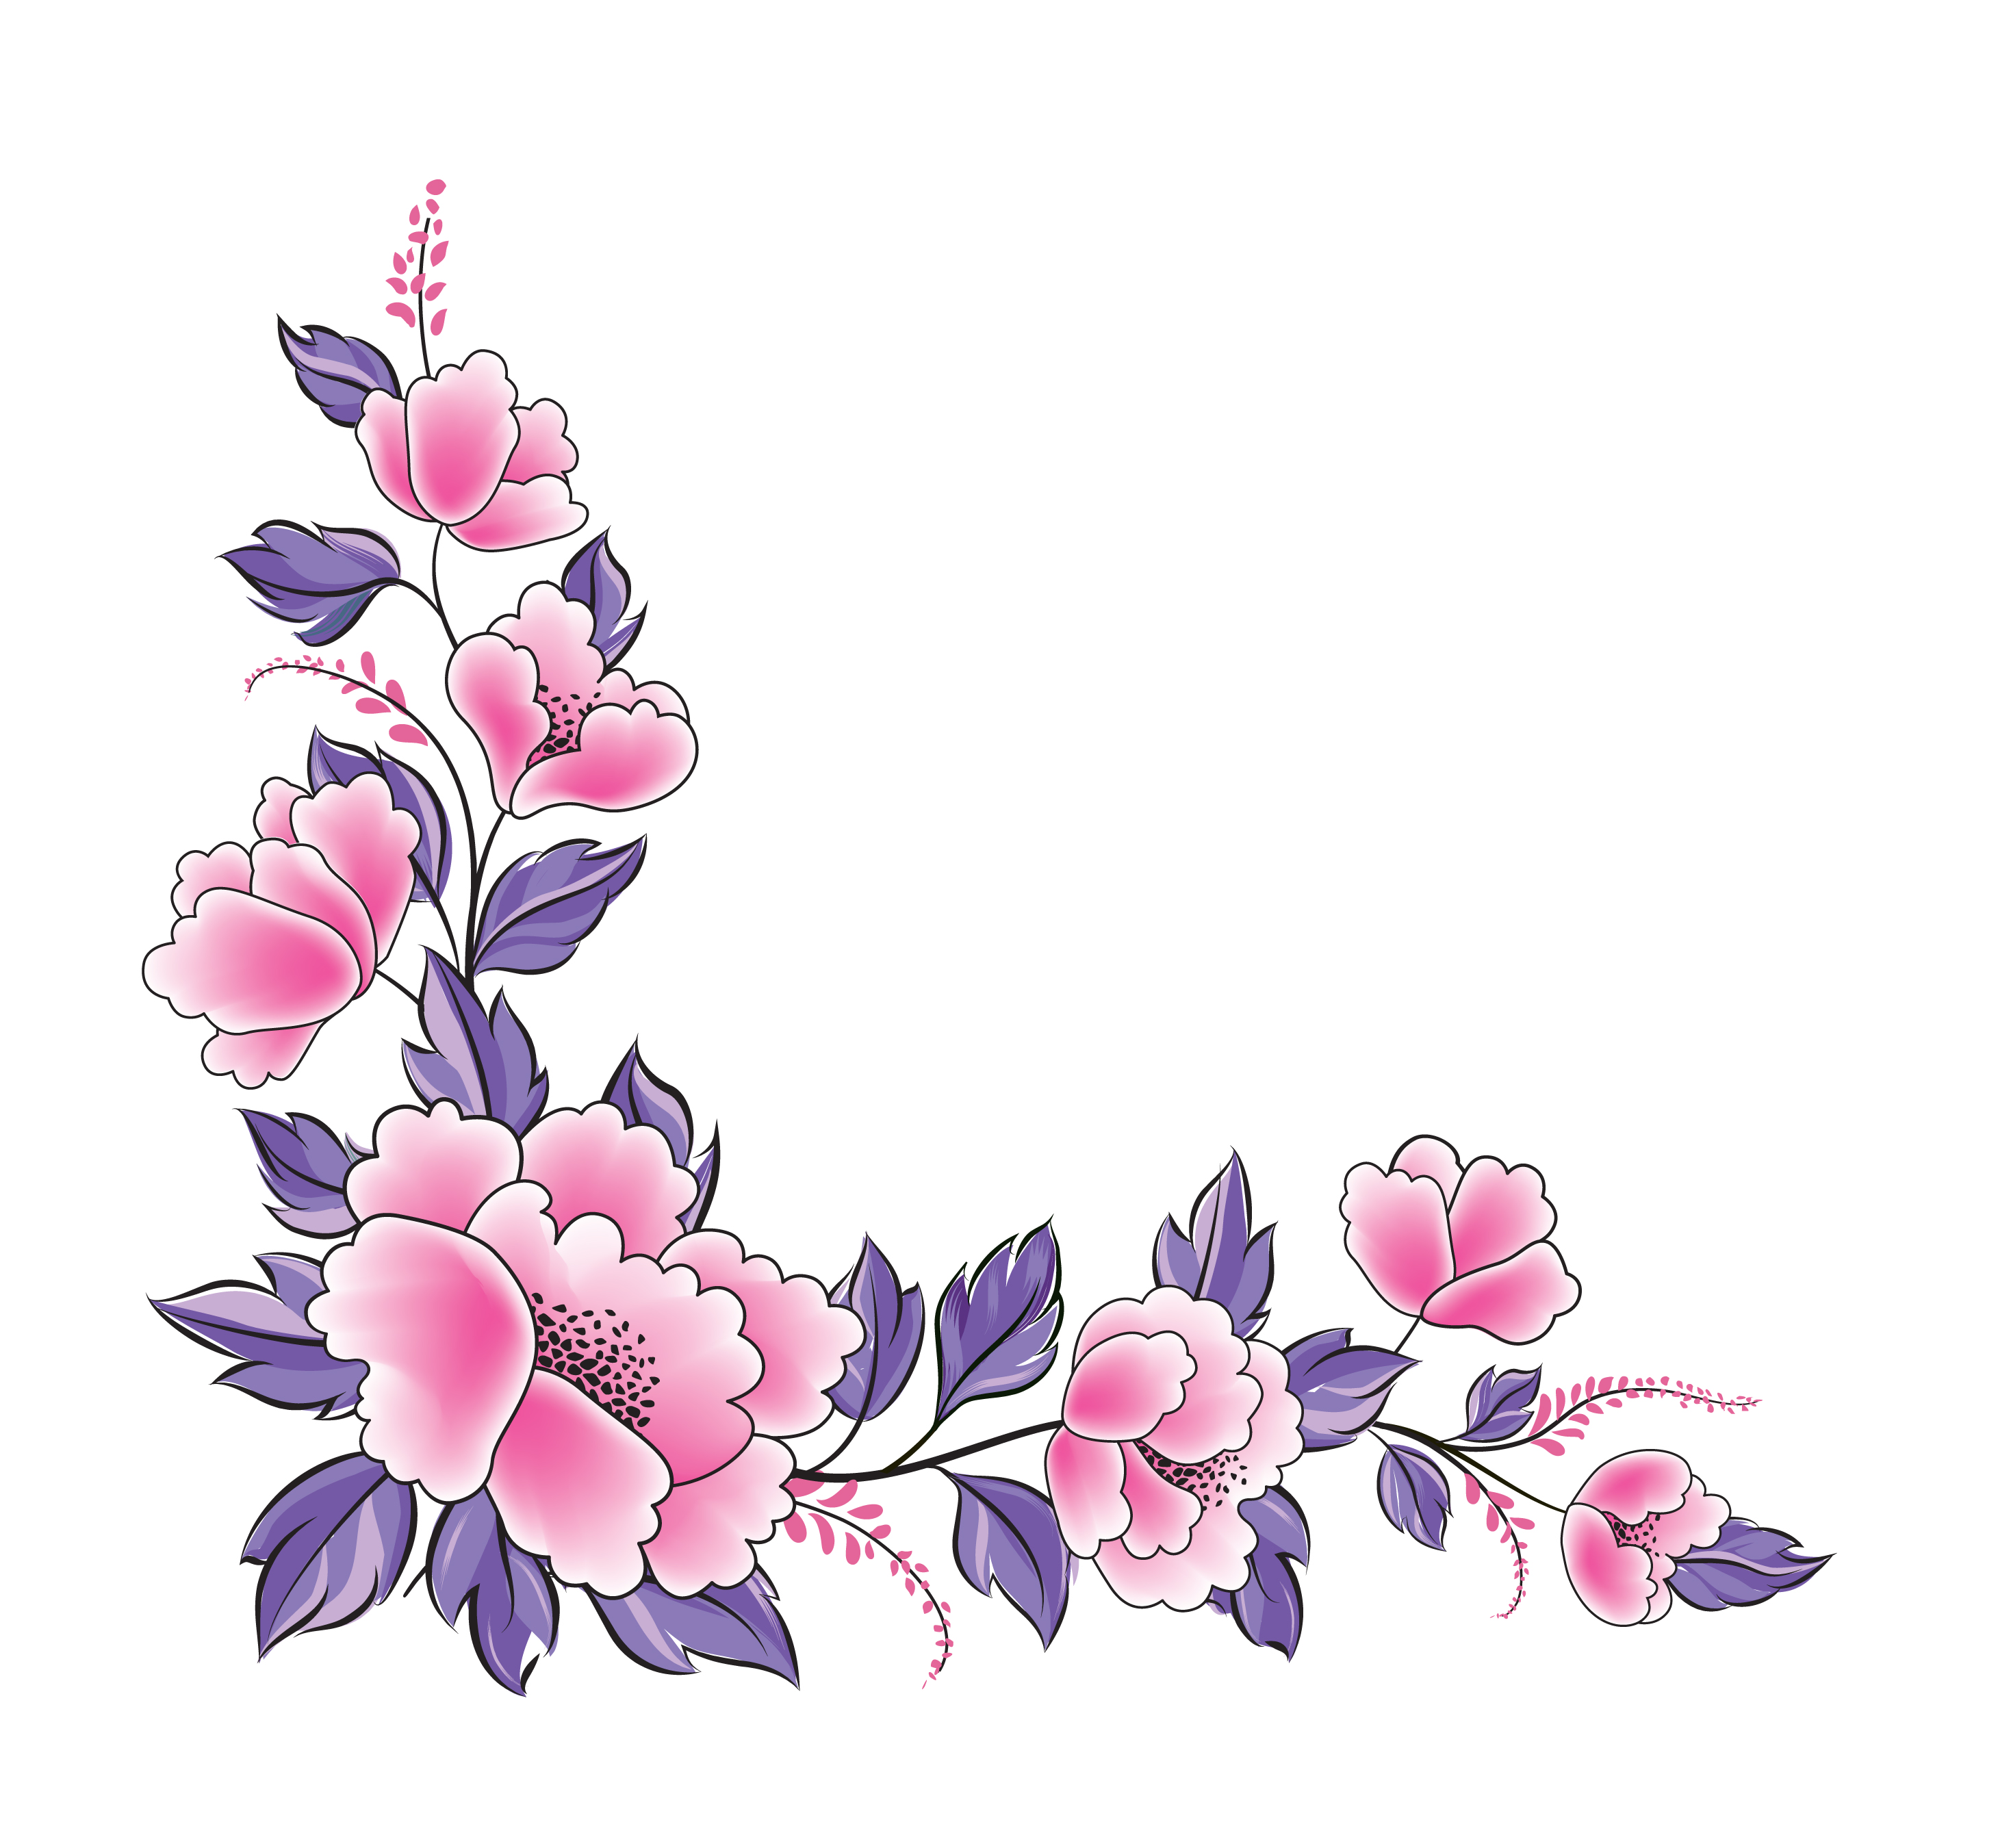 bordure de guirlande décorative de fleurs roses et violettes 1419239 -  Telecharger Vectoriel Gratuit, Clipart Graphique, Vecteur Dessins et  Pictogramme Gratuit